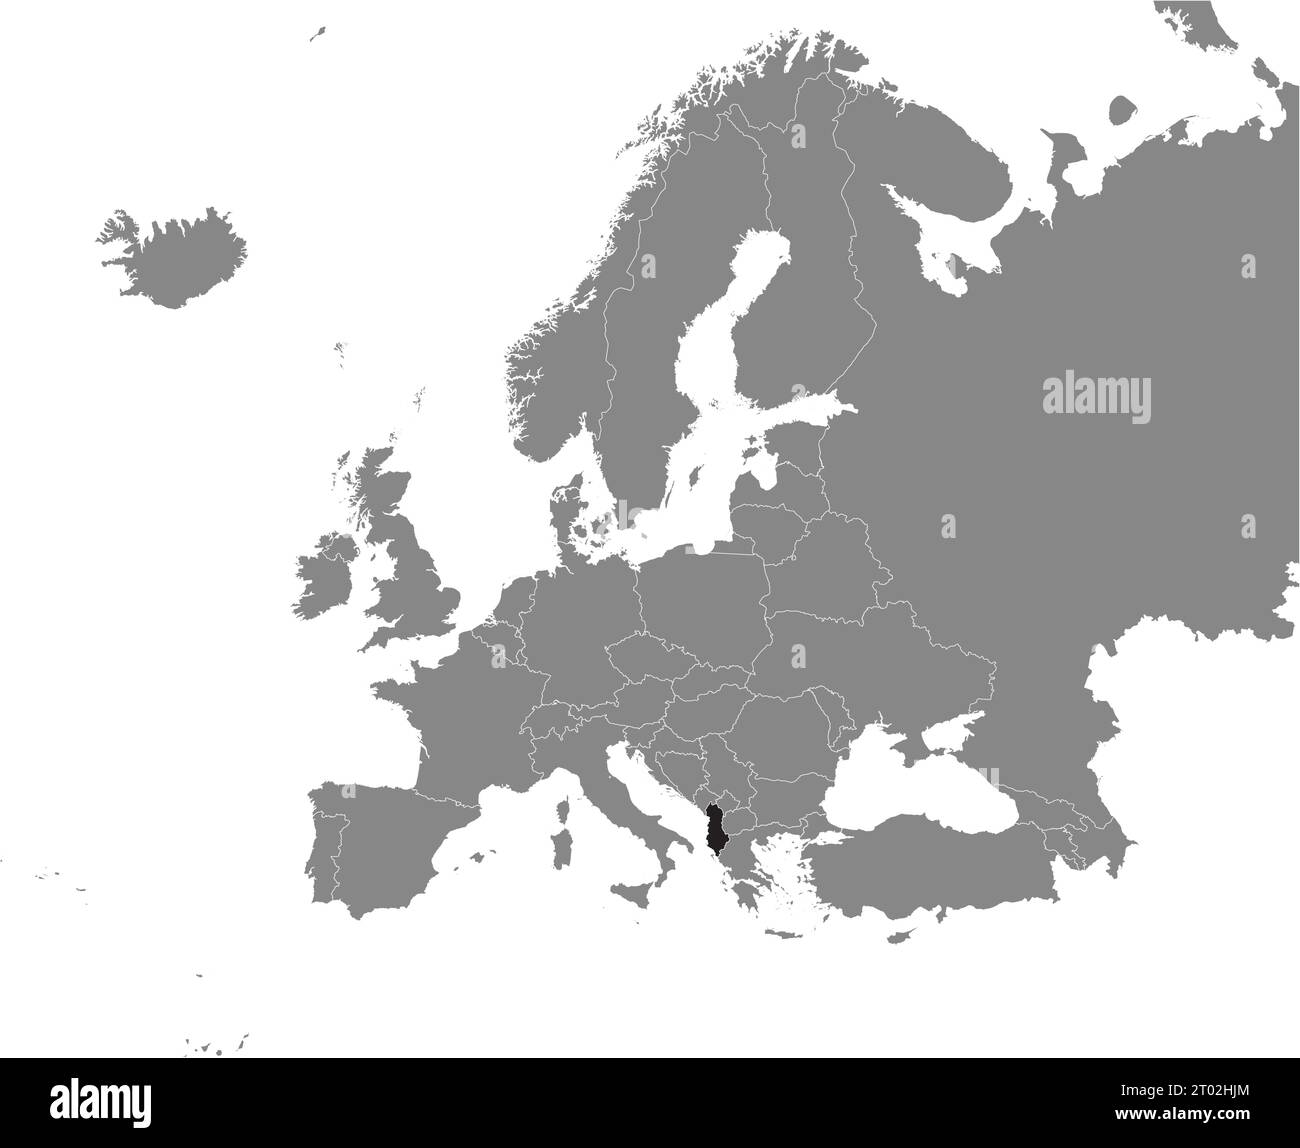 Schwarze CMYK-Nationalkarte ALBANIENS in detaillierter grauer, leerer politischer Karte des europäischen Kontinents auf transparentem Hintergrund mit Mercator-Projektion Stock Vektor